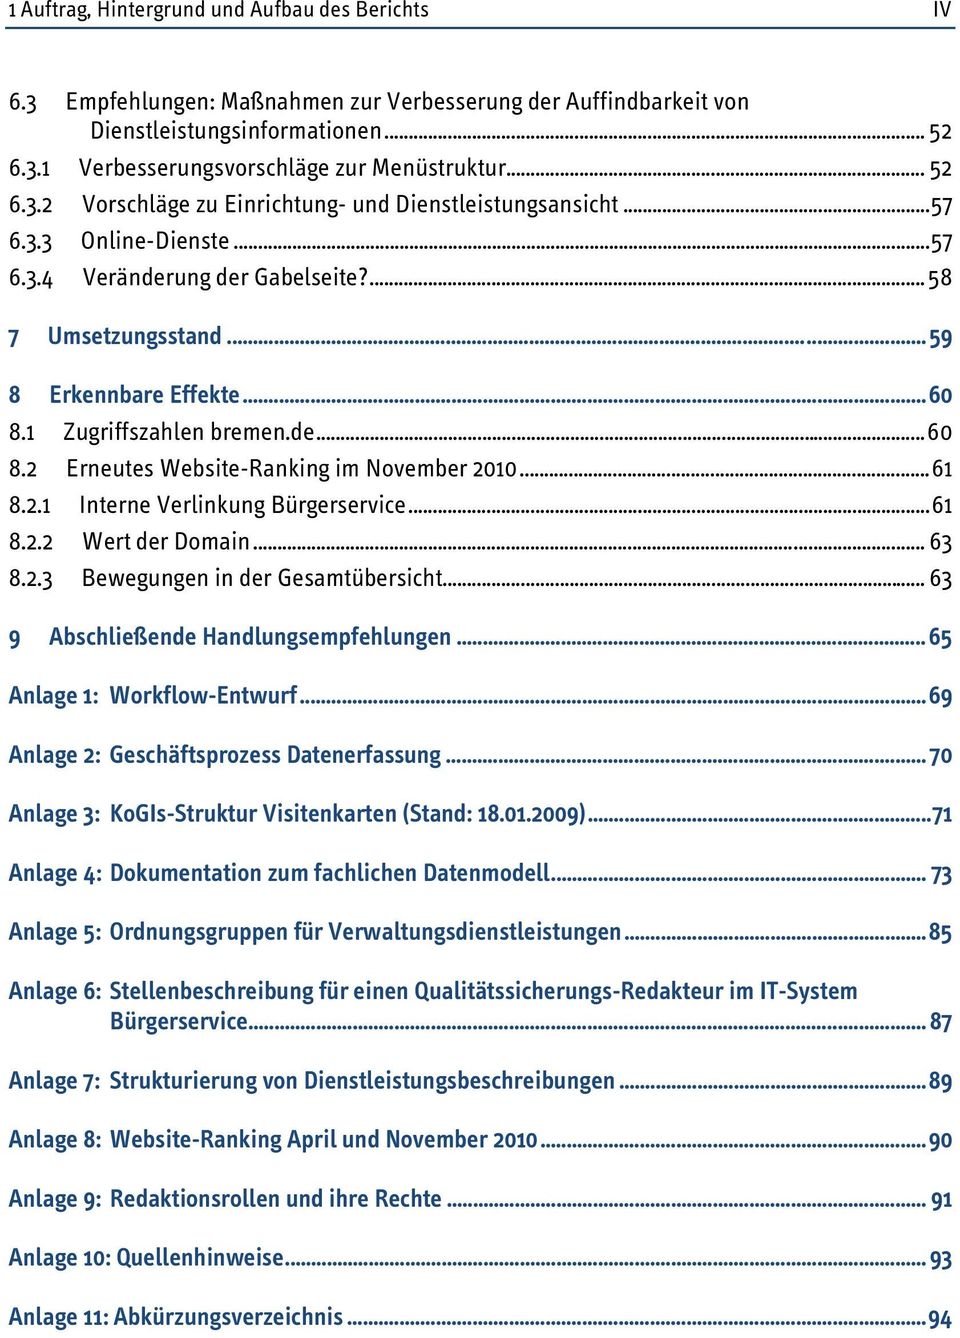 1 Zugriffszahlen bremen.de... 60 8.2 Erneutes Website-Ranking im November 2010... 61 8.2.1 Interne Verlinkung Bürgerservice... 61 8.2.2 Wert der Domain... 63 8.2.3 Bewegungen in der Gesamtübersicht.